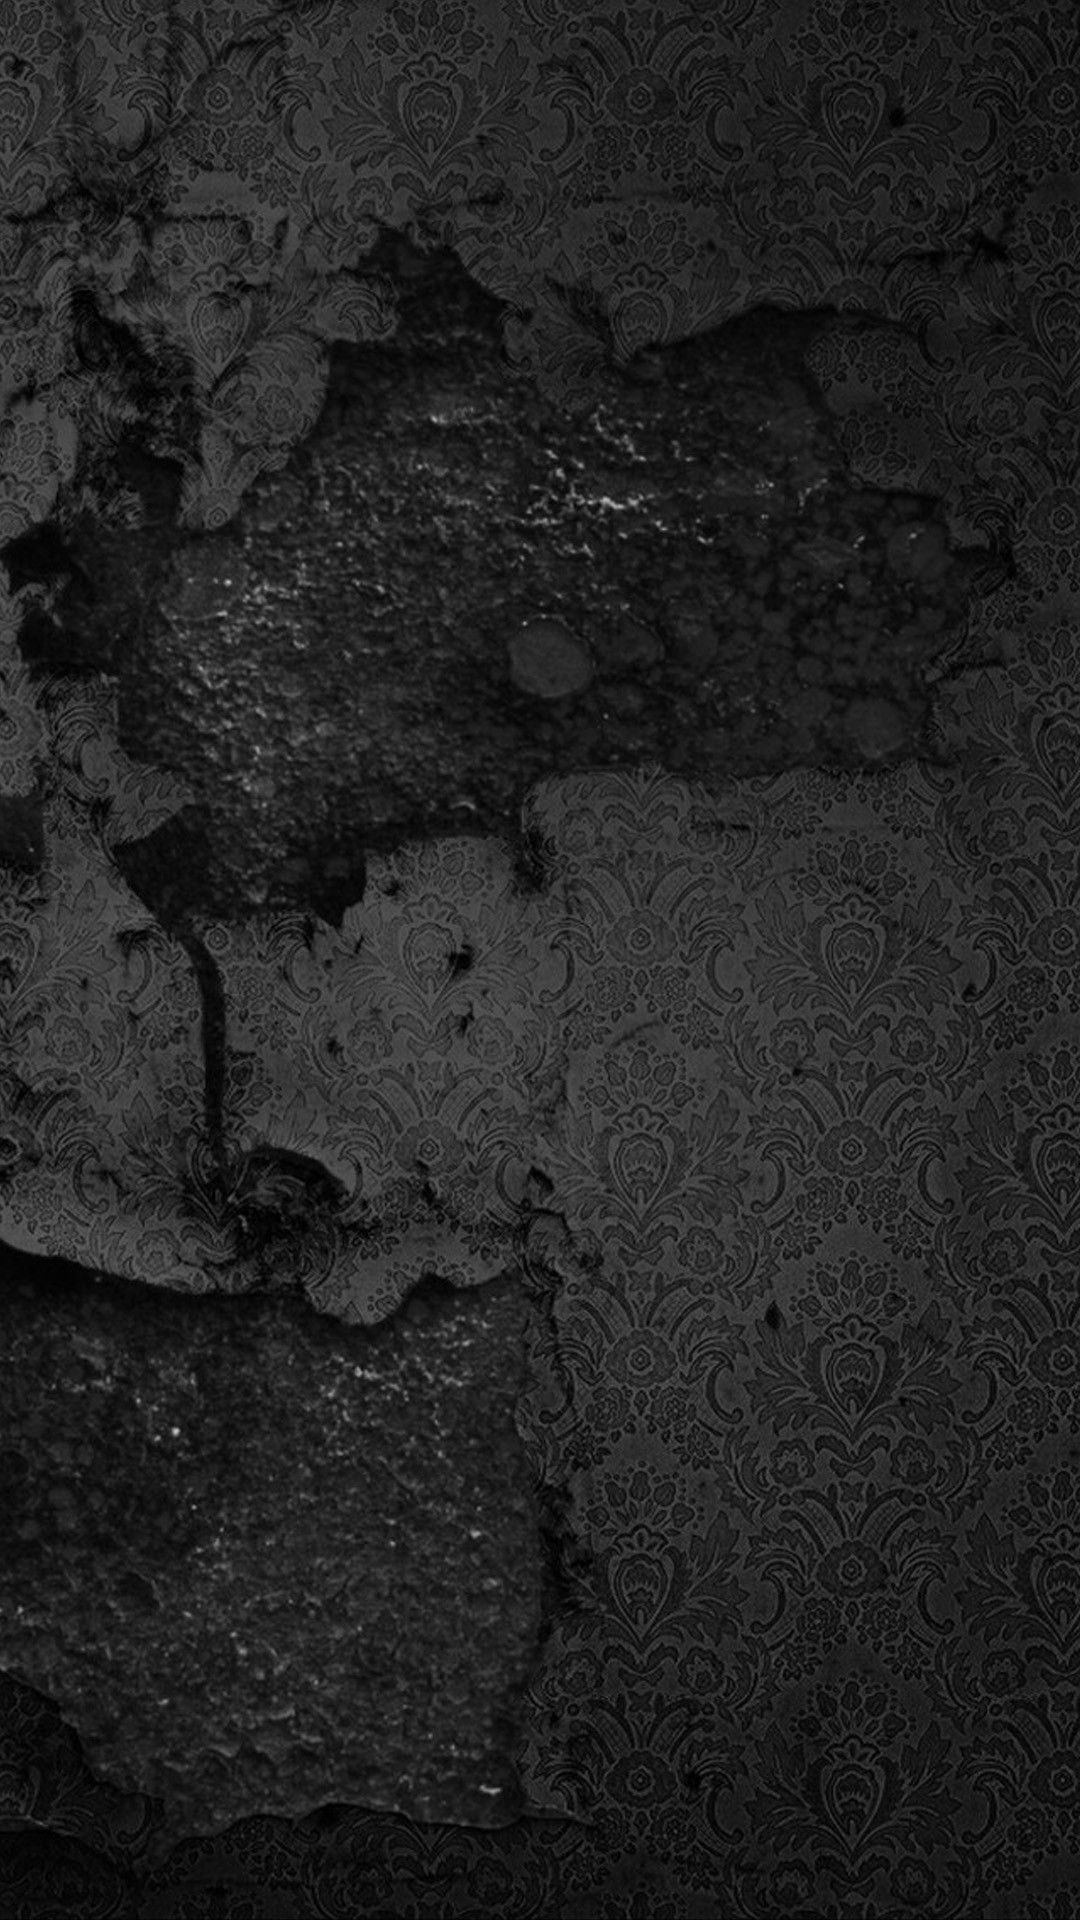  Beton Hintergrundbild 1080x1920. weiße spitze iphone tapete #white #lace #iphone #wallpaper. Black wallpaper iphone, Black wallpaper, Black wallpaper for mobile